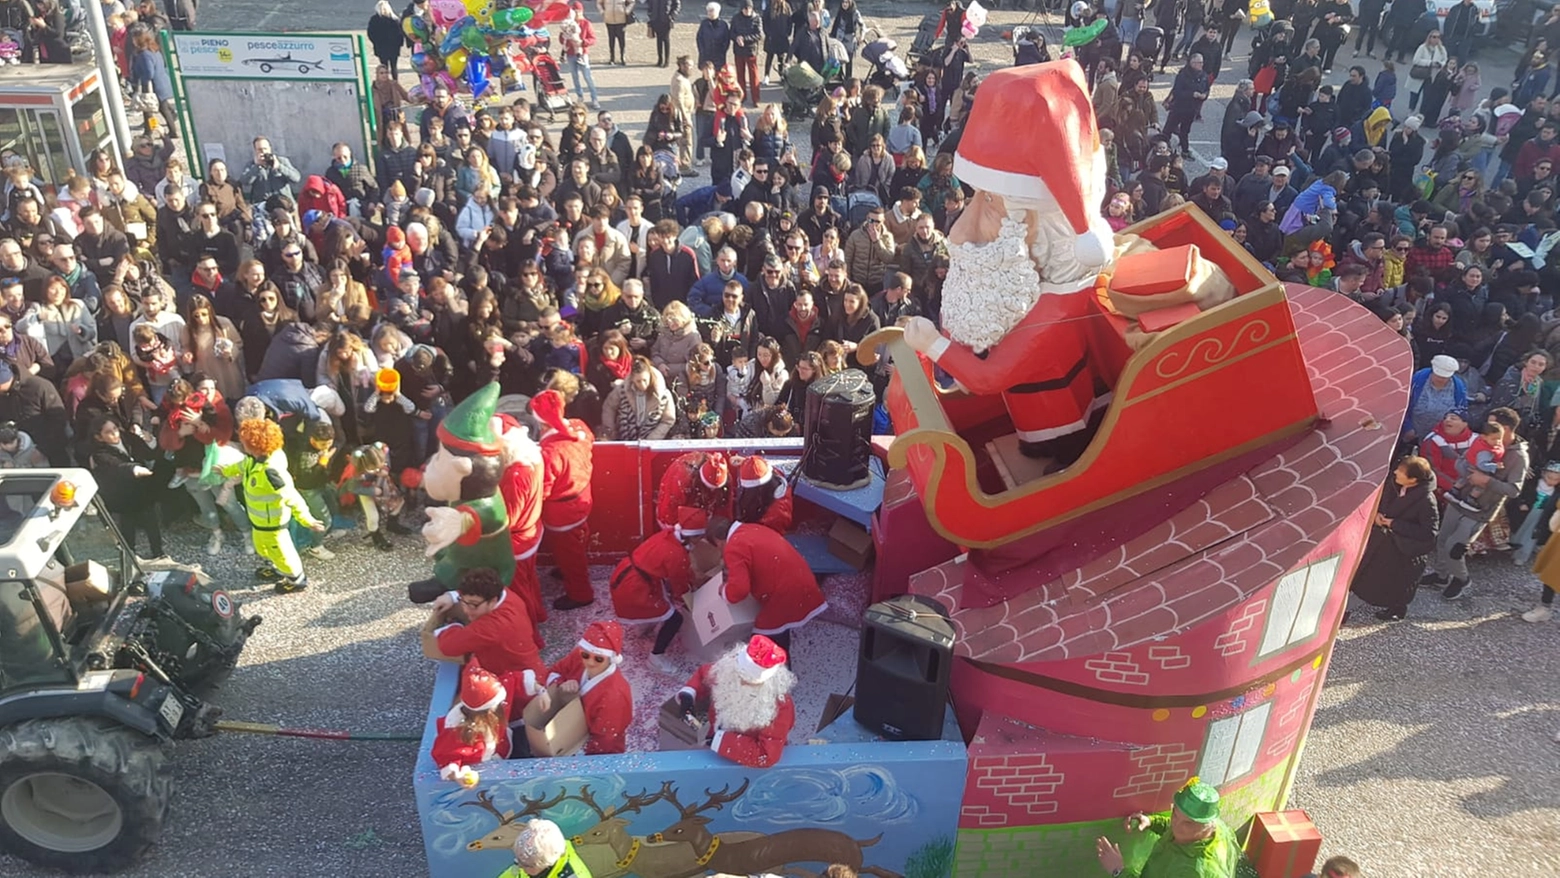 Carnevale a Villa Fastiggi: uno dei carri della sfilata che ha attirato circa 15mila persone